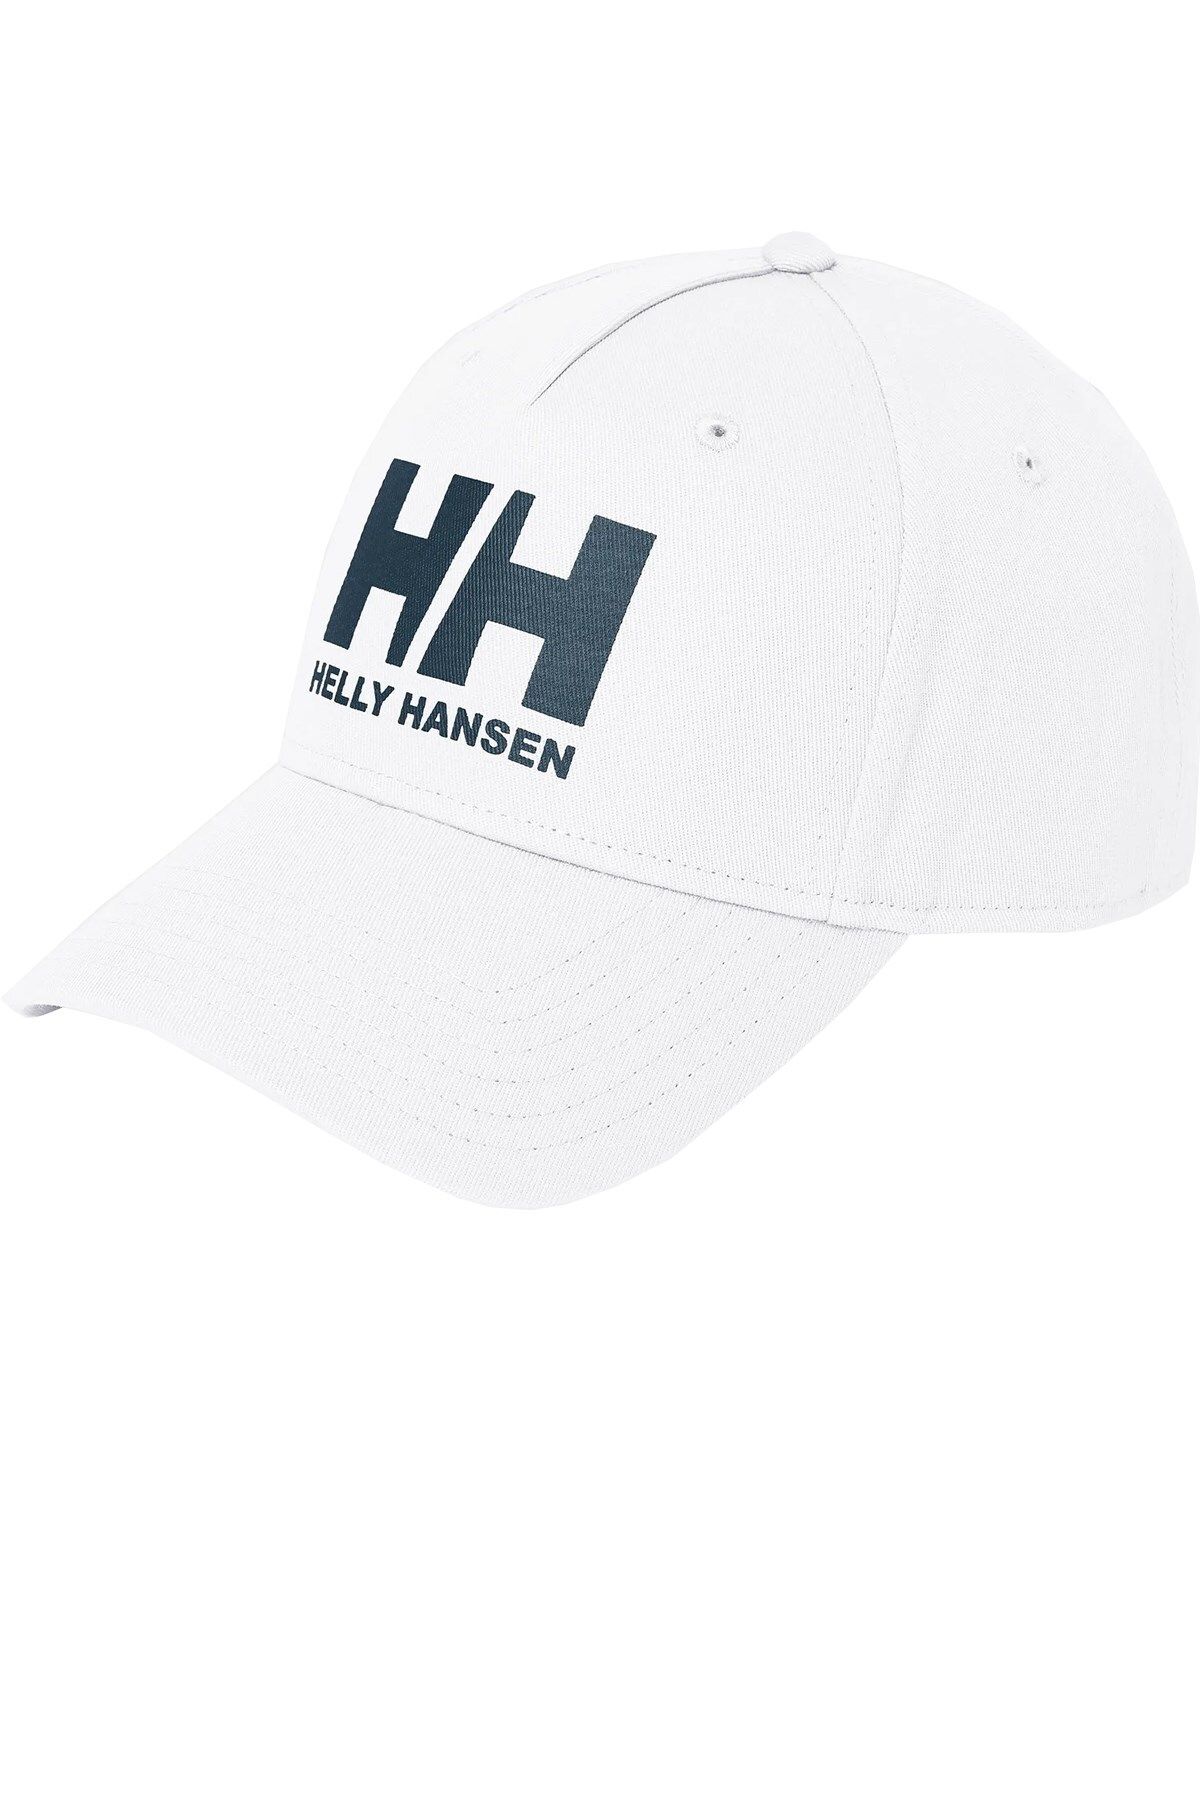 Helly Hansen Ball Kep Şapka Unisex Şapka HHA.67434 001